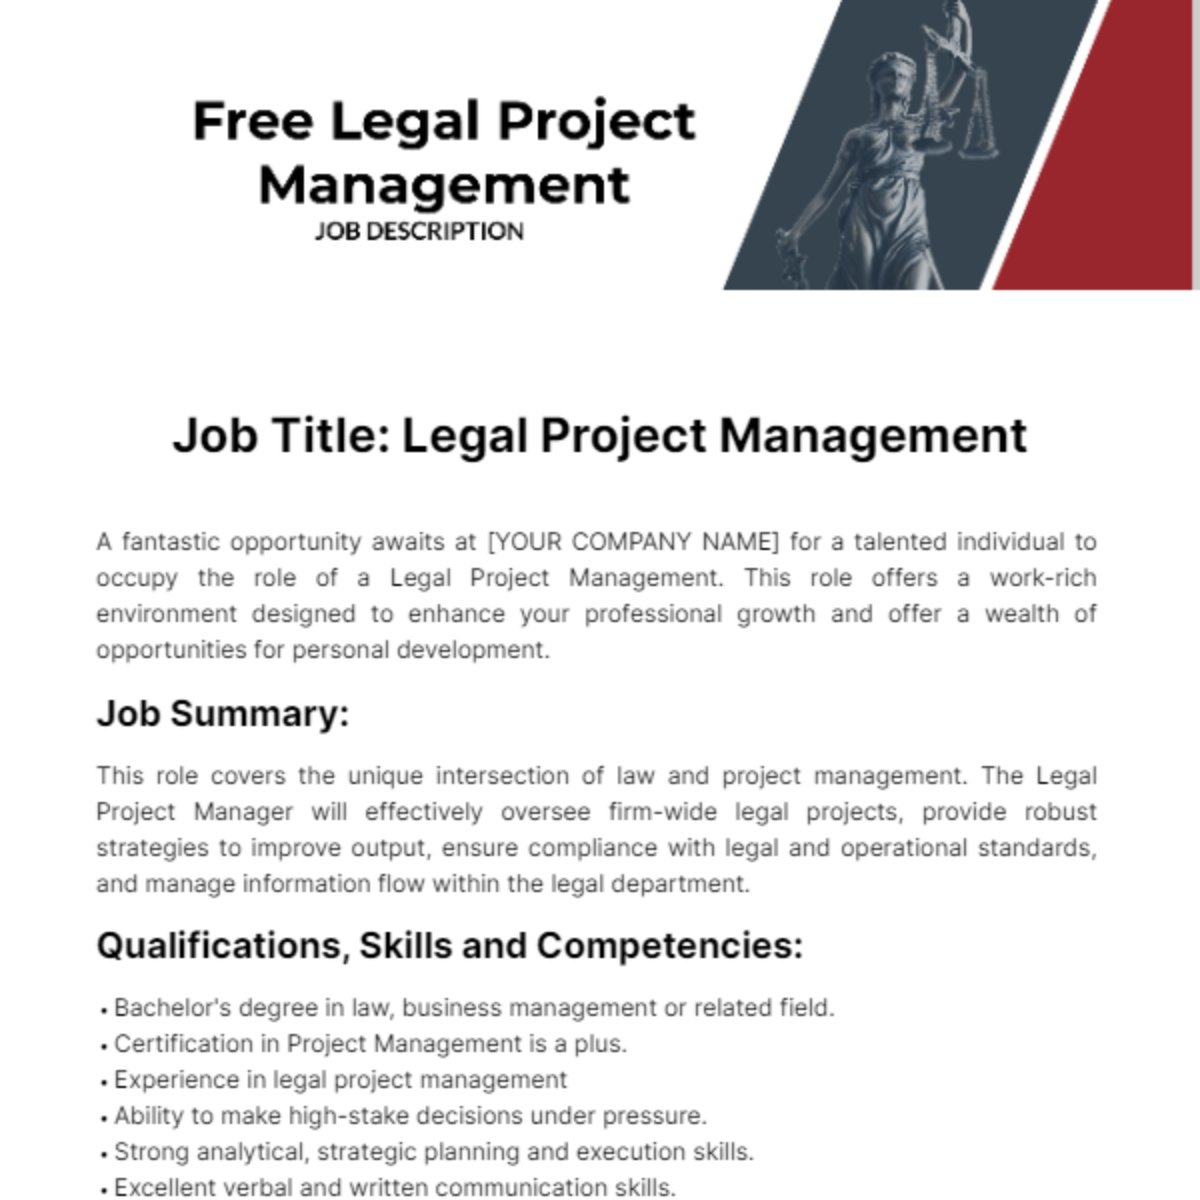 Legal Project Management Job Description Template